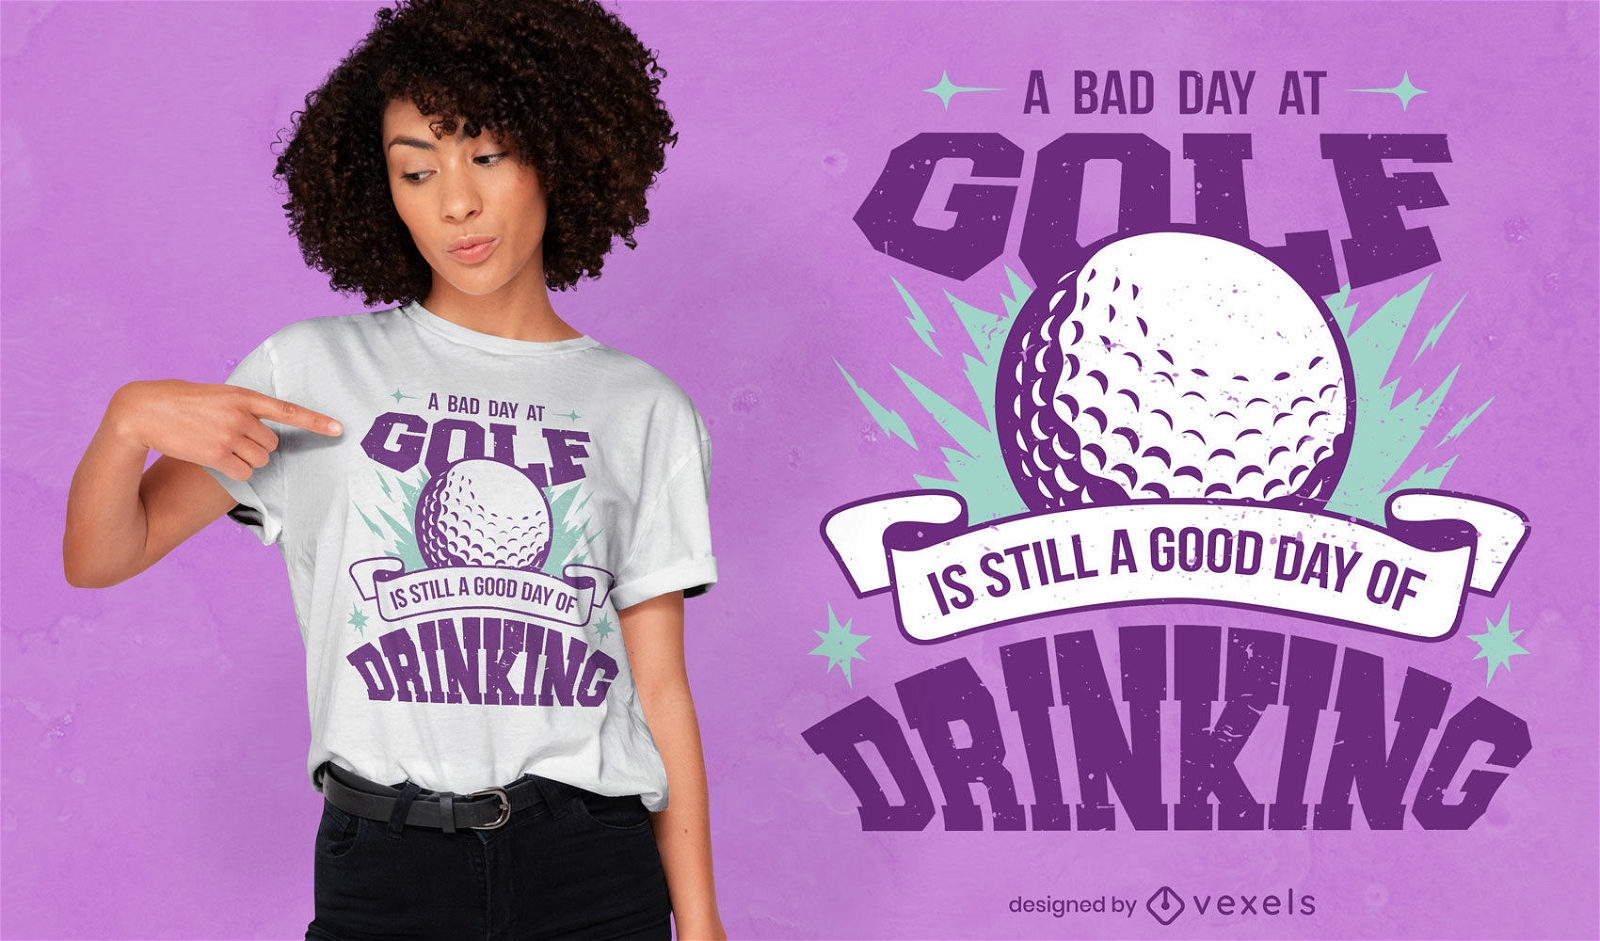 Un mal d?a en el golf bebiendo dise?o de camiseta.